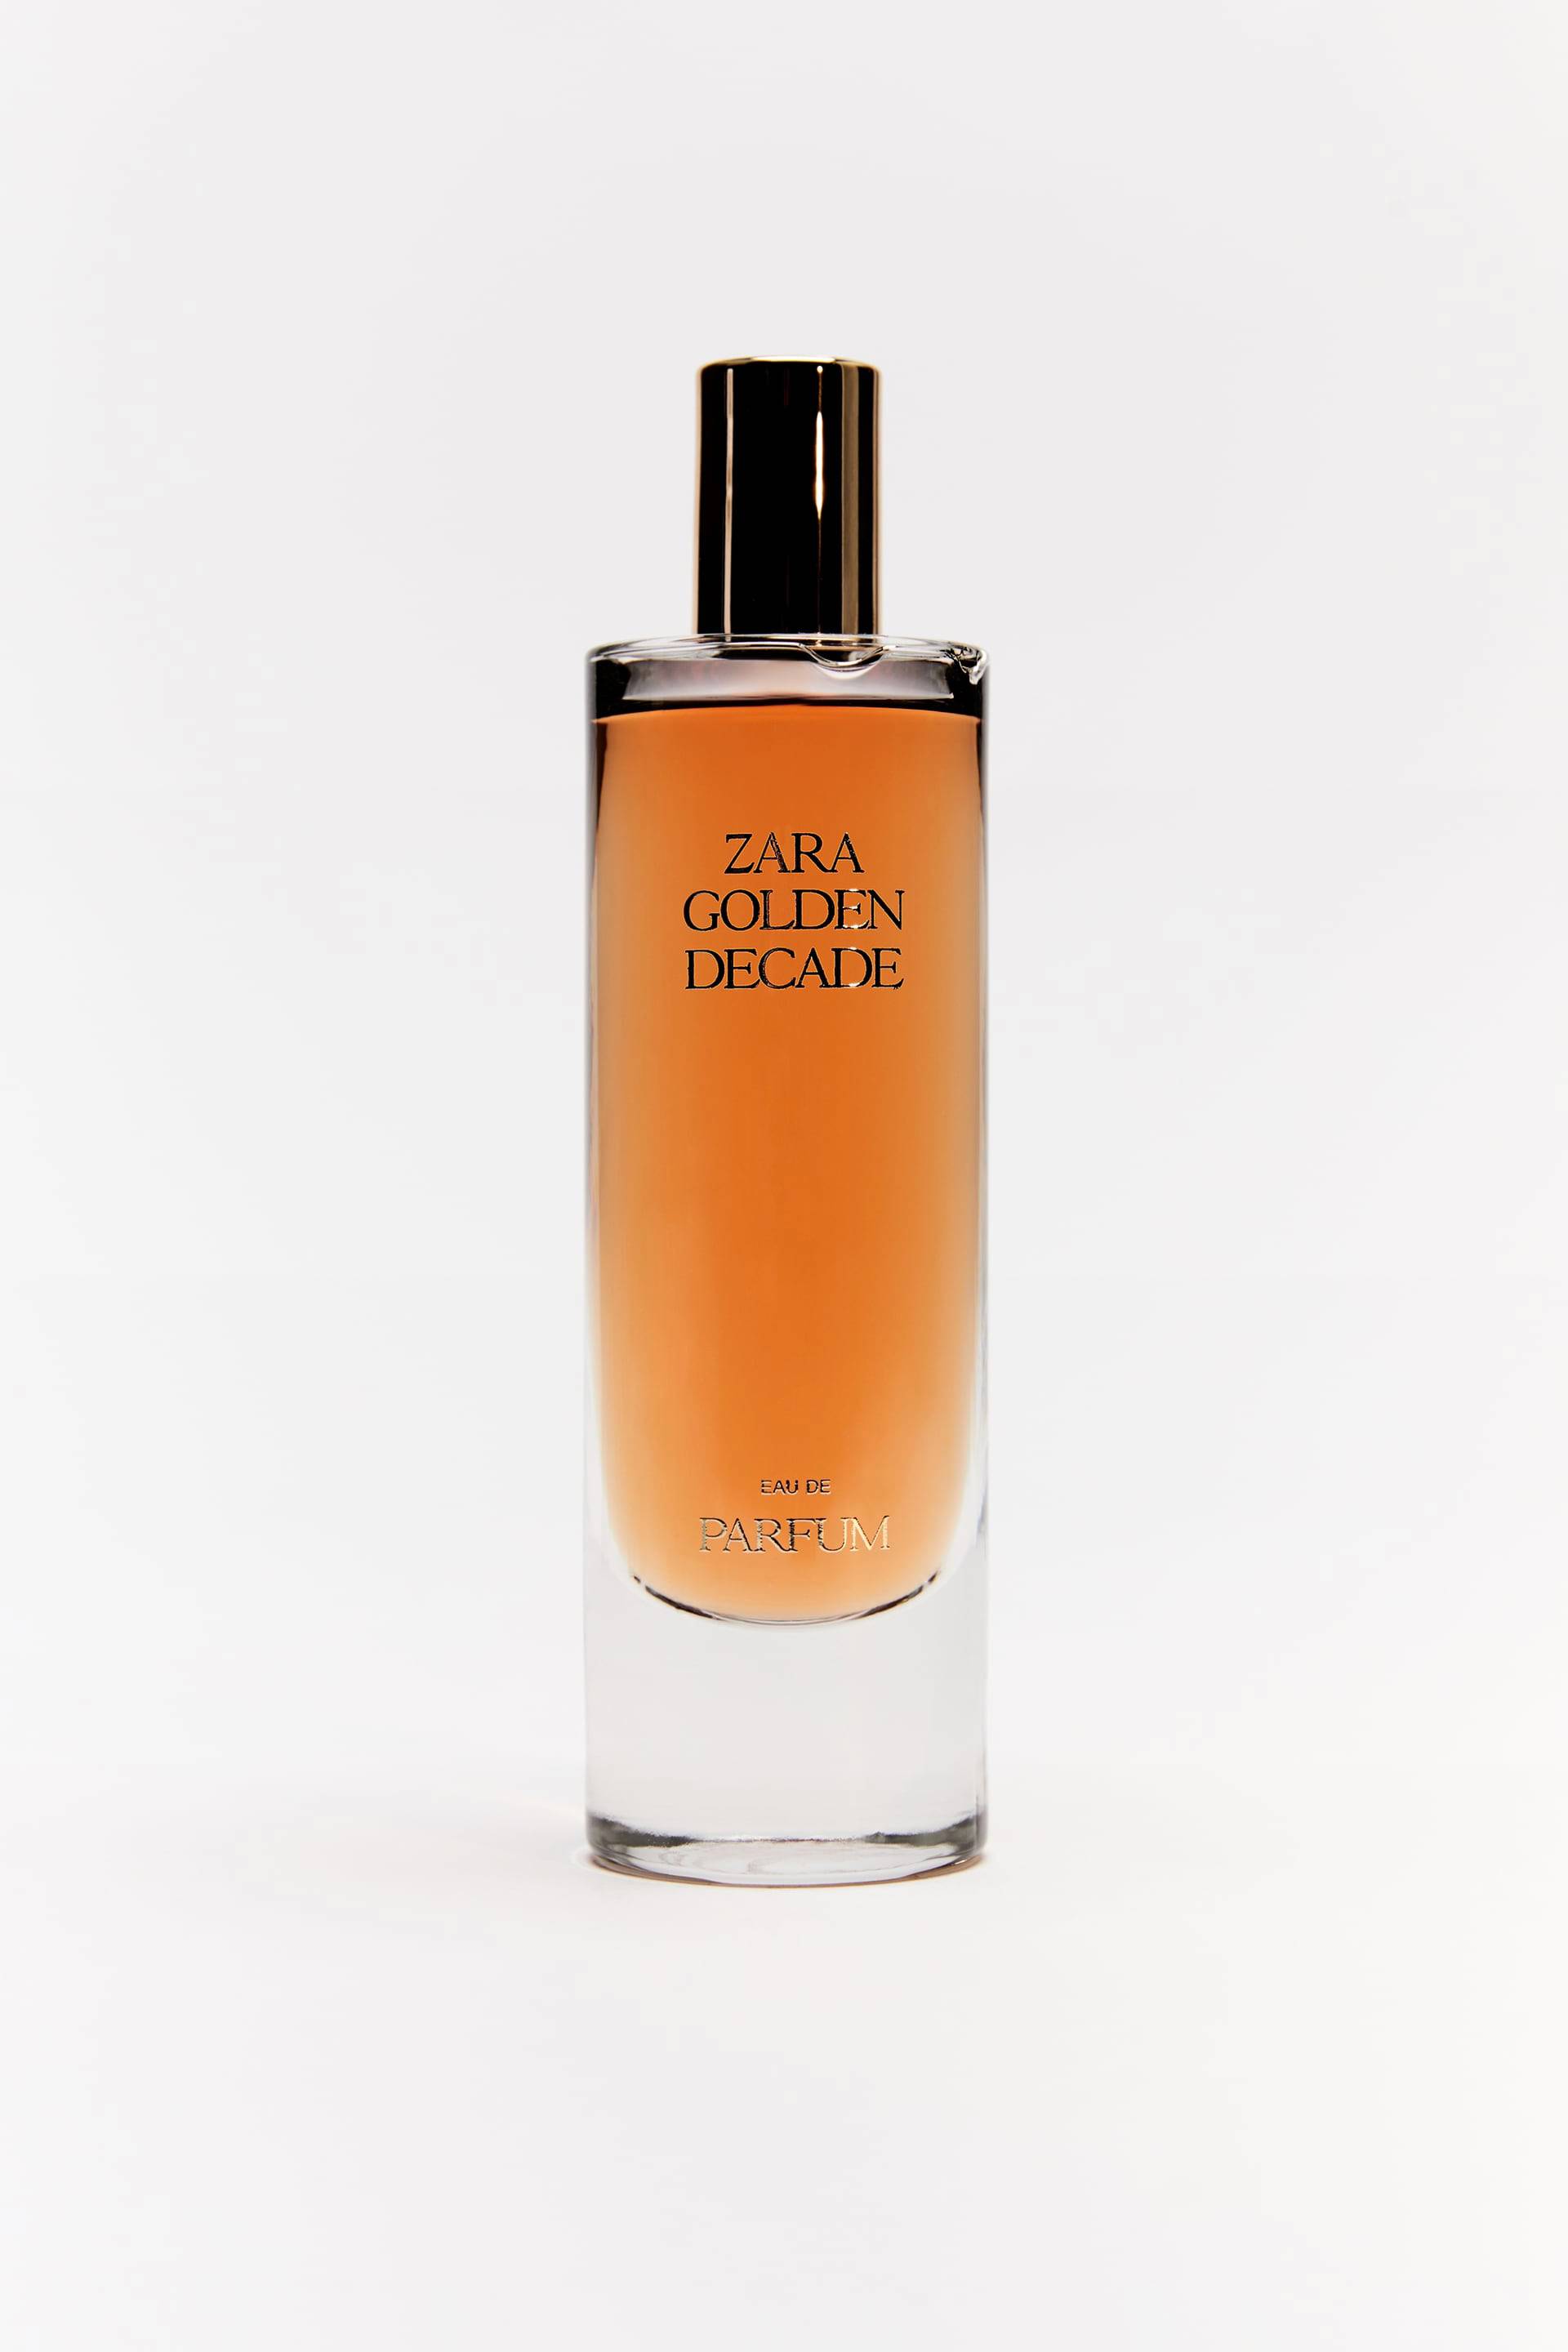 Perfume de Zara Golden Decade